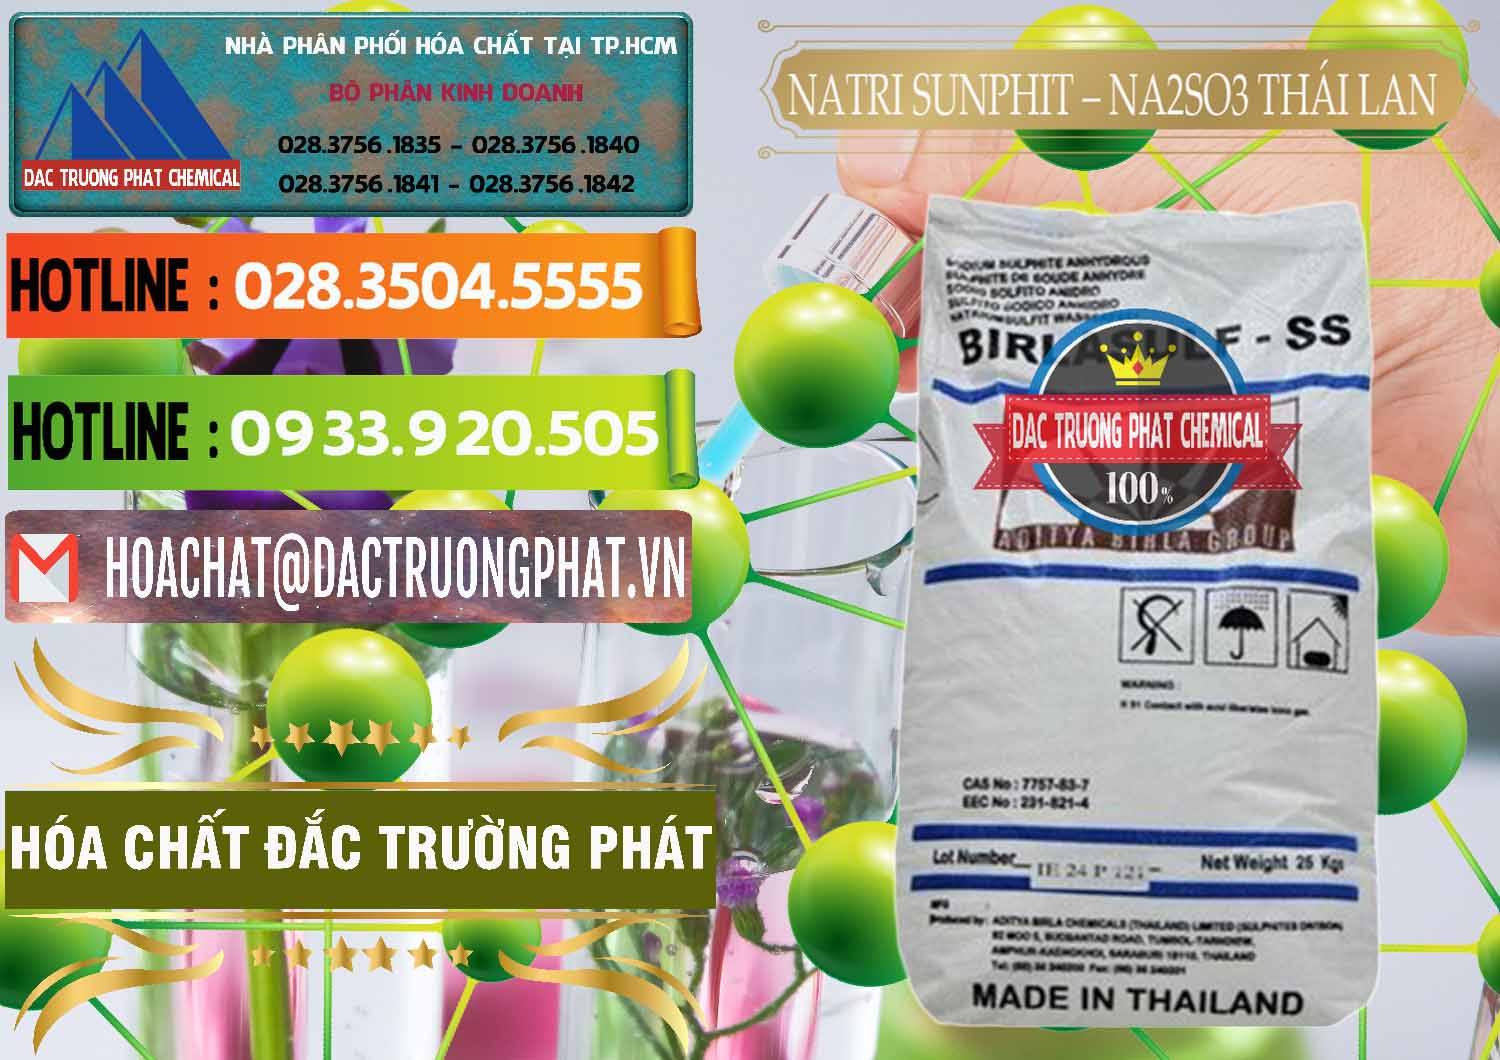 Cty chuyên nhập khẩu ( bán ) Natri Sunphit - NA2SO3 Thái Lan - 0105 - Đơn vị kinh doanh & phân phối hóa chất tại TP.HCM - cungcaphoachat.com.vn